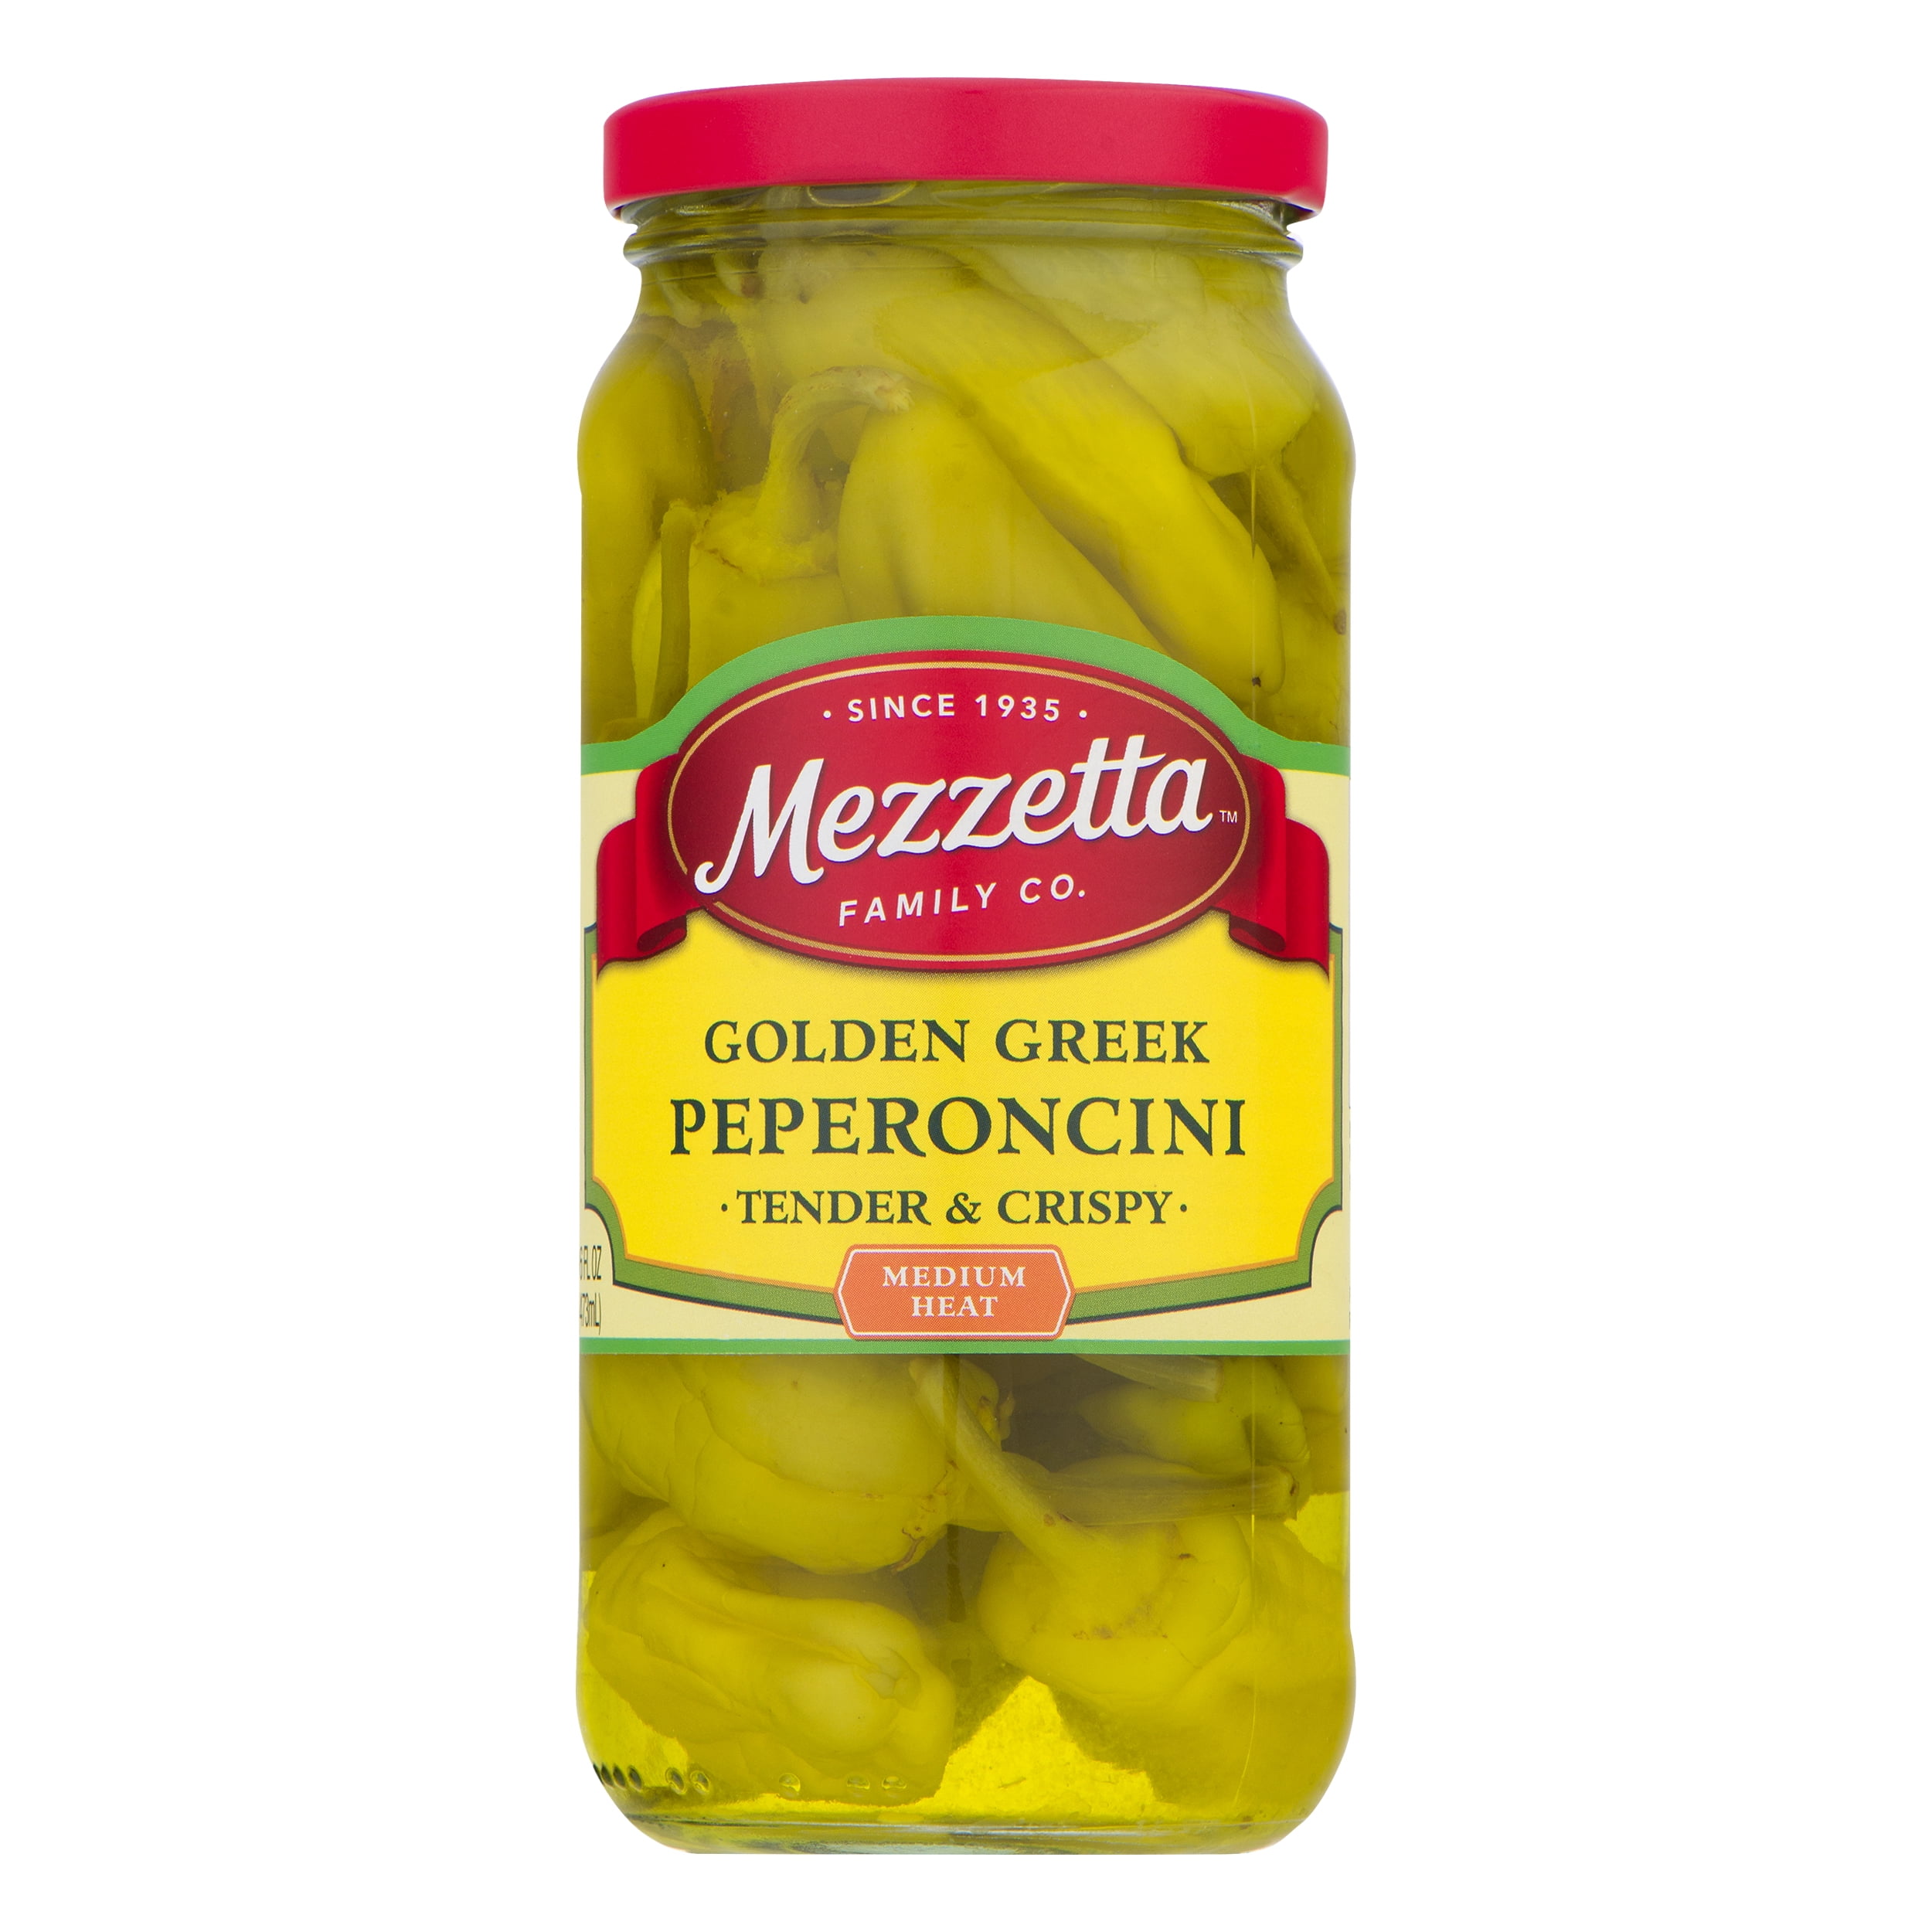 Mezzetta Golden Greek Peperoncini, 16 fl oz